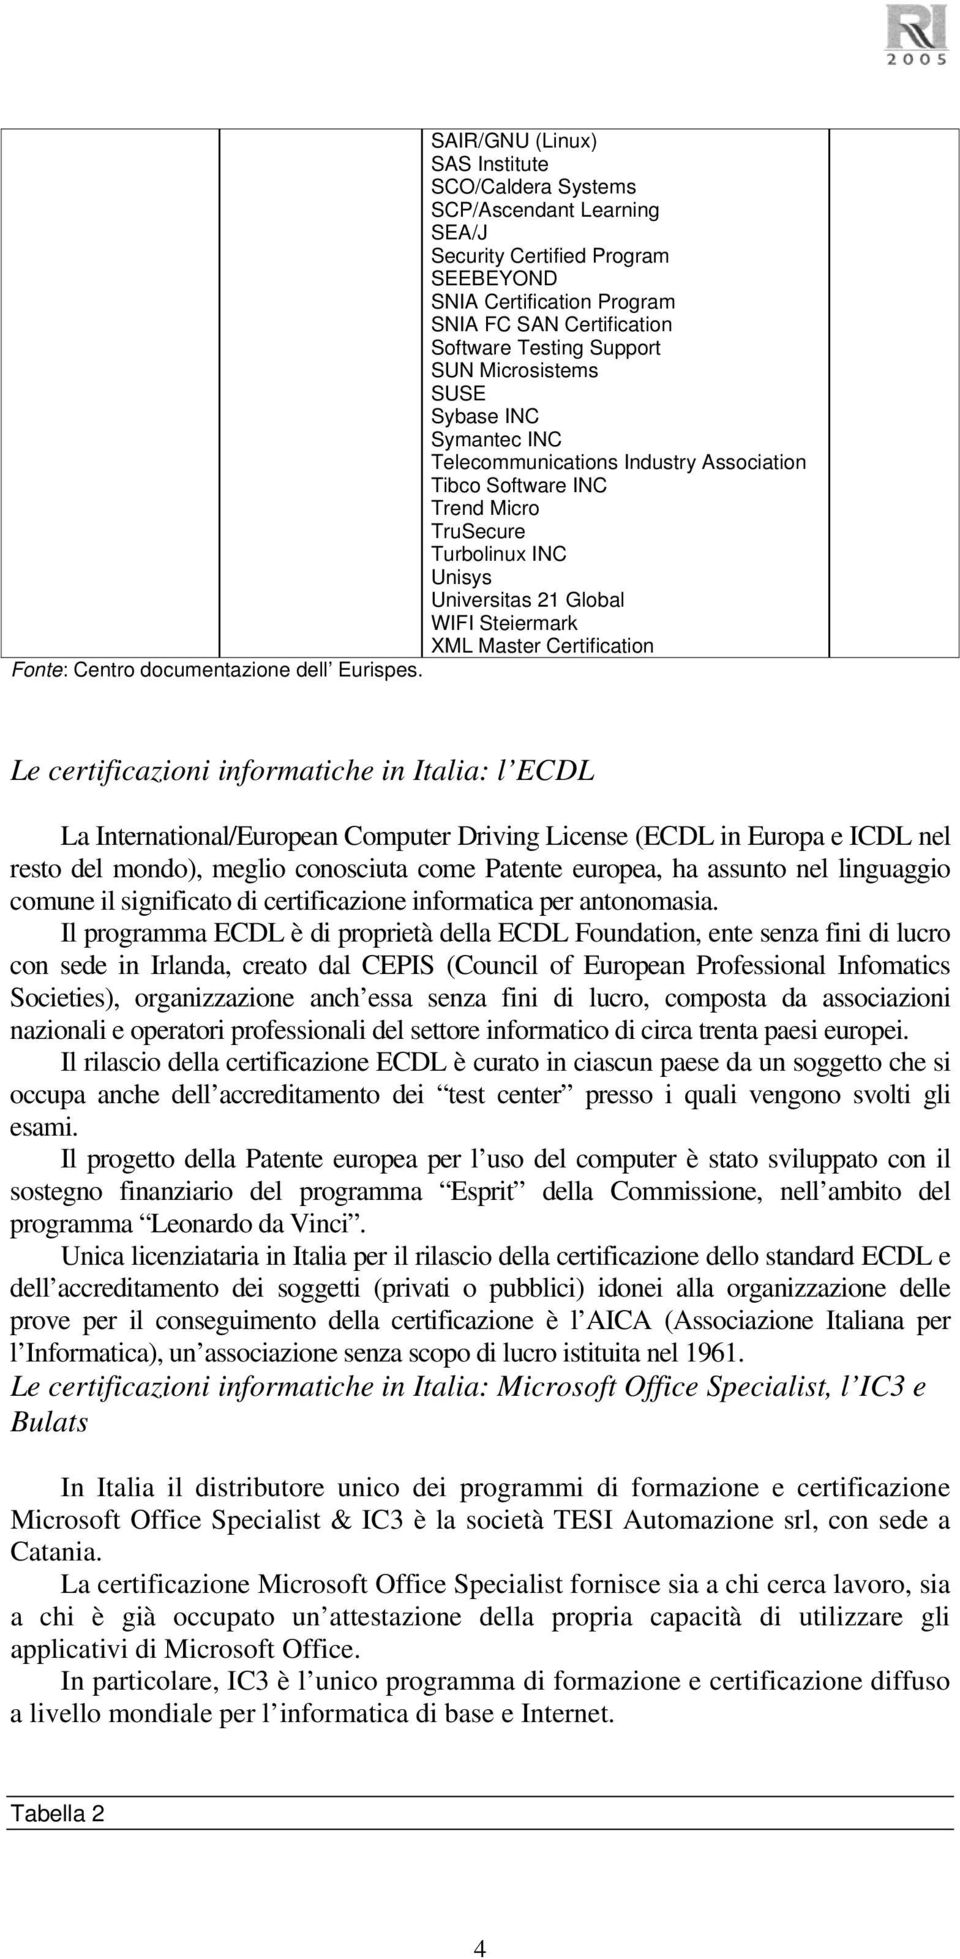 Certification Fonte: Centro documentazione dell Eurispes.